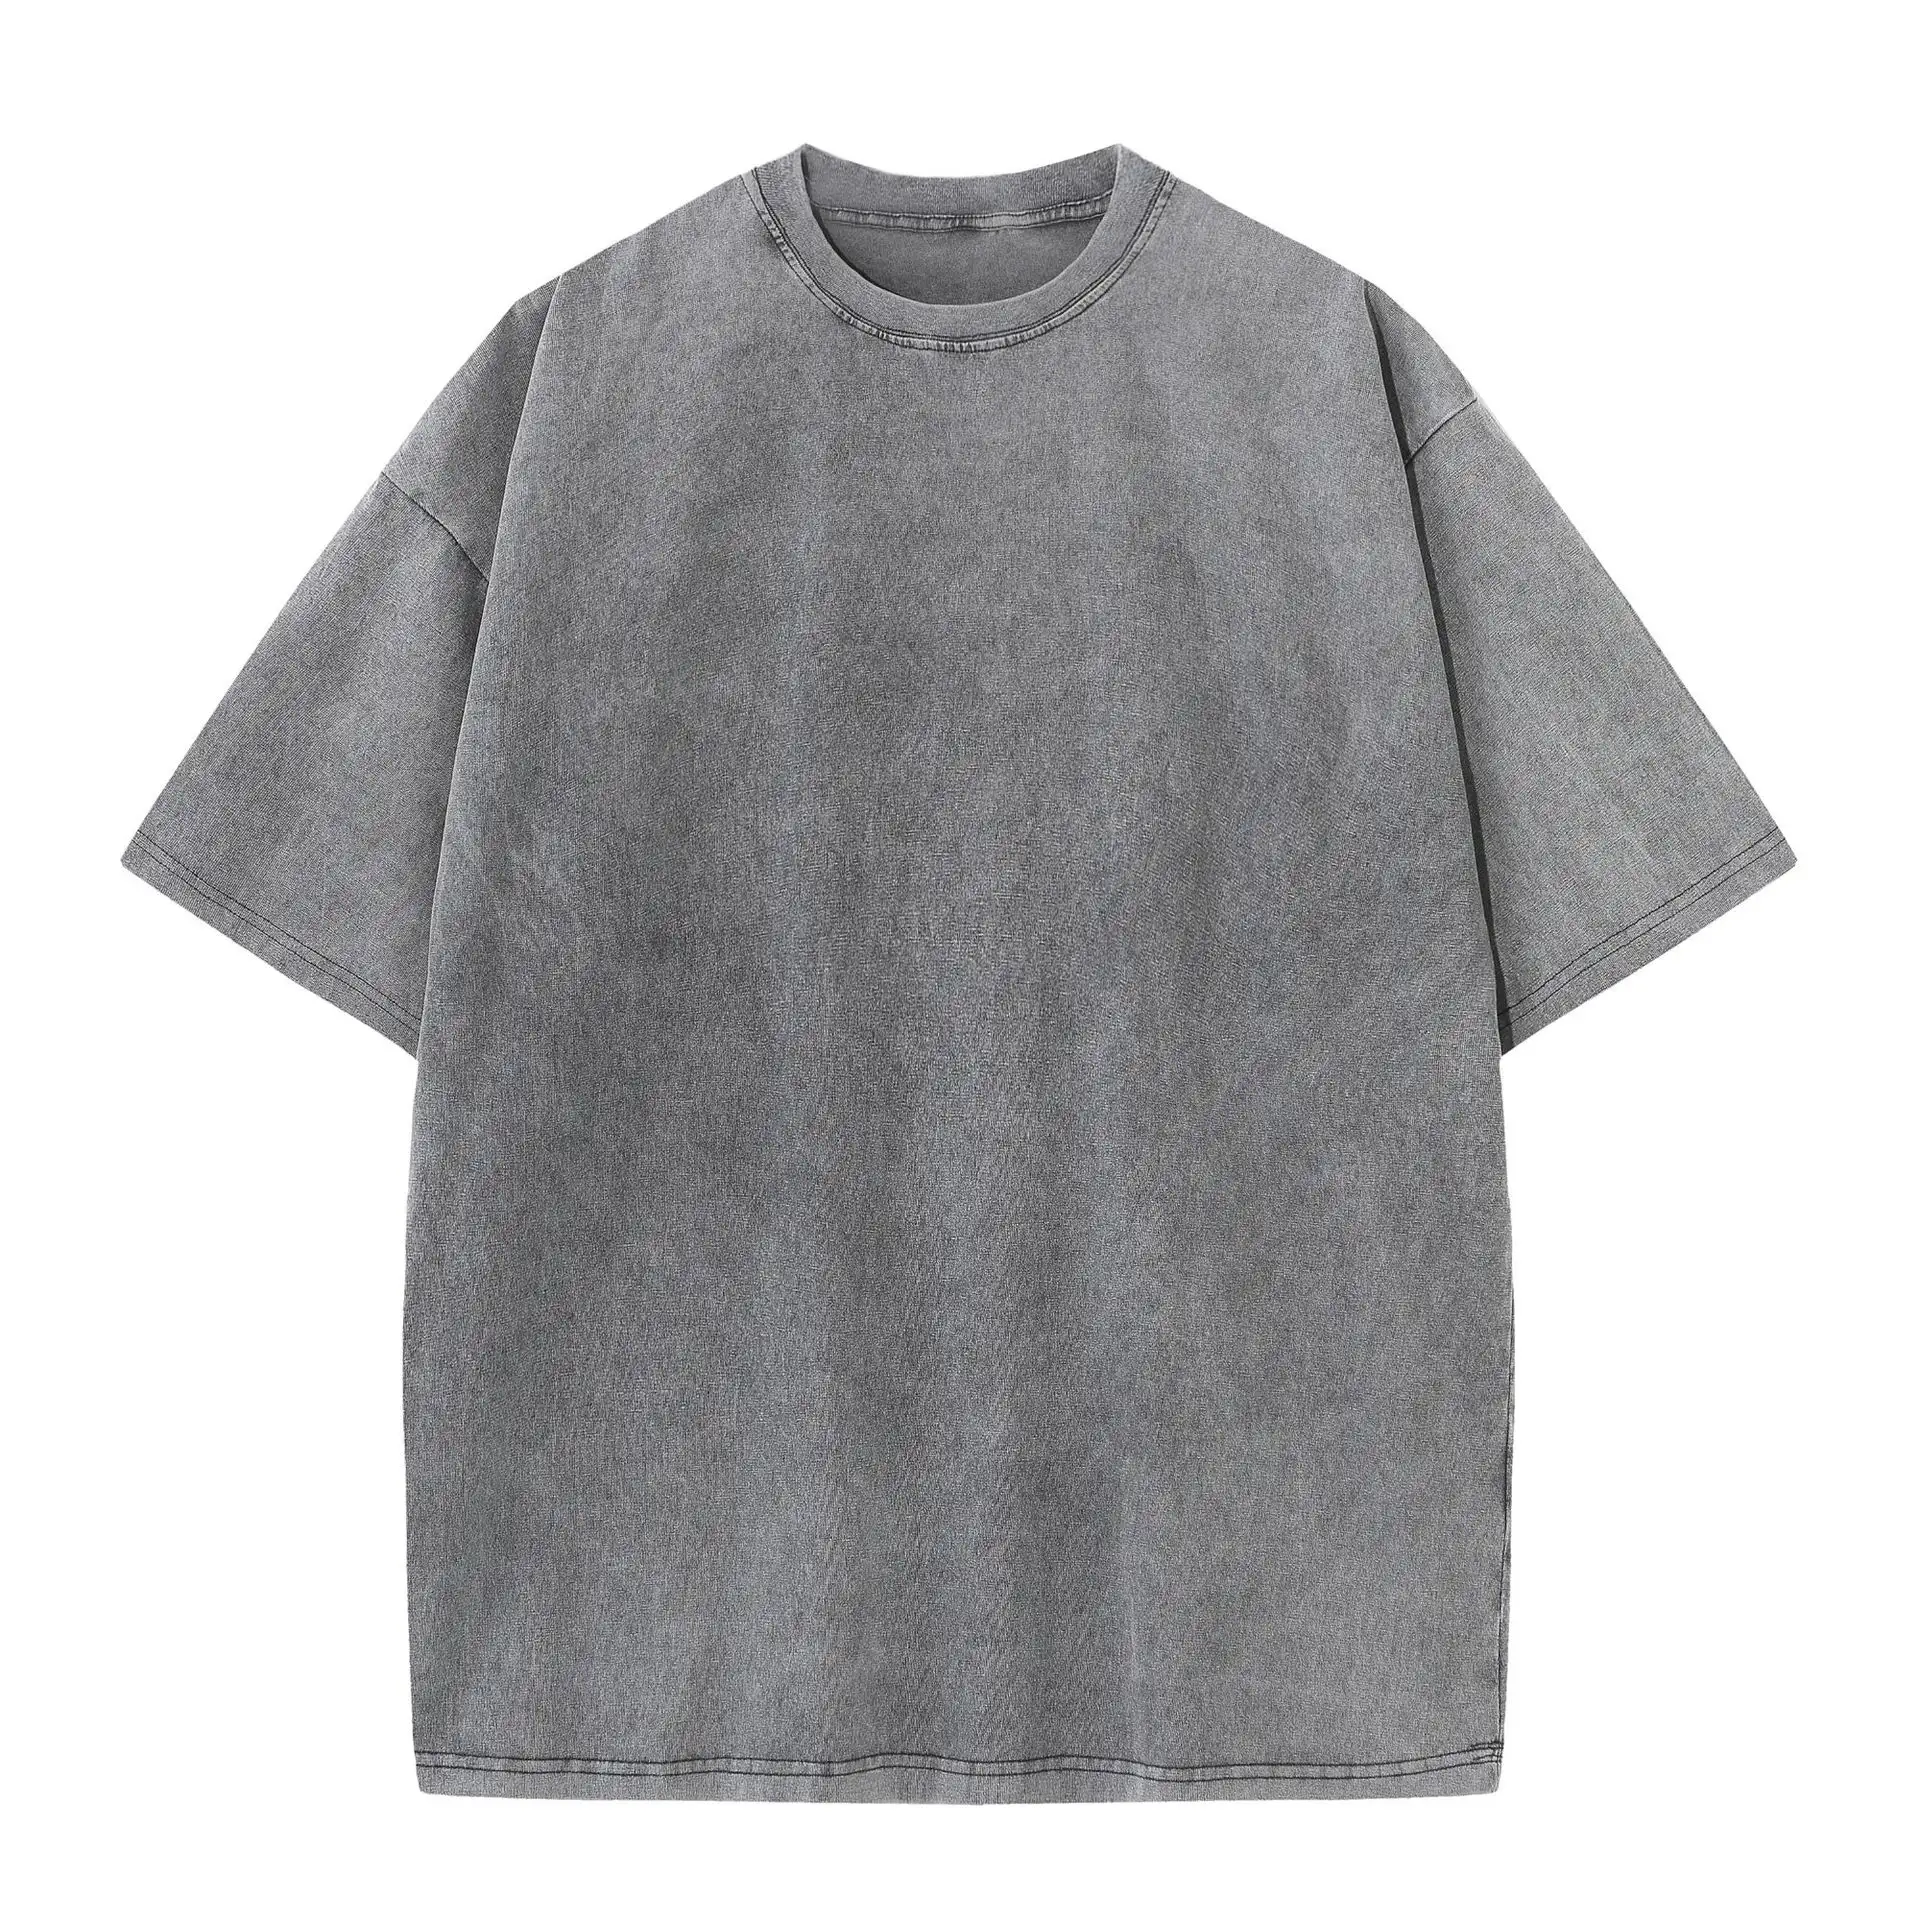 Toptan özel boş saf pamuk erkekler için soluk T shirt asit yıkama Vintage Unisex boy erkek Tshirt